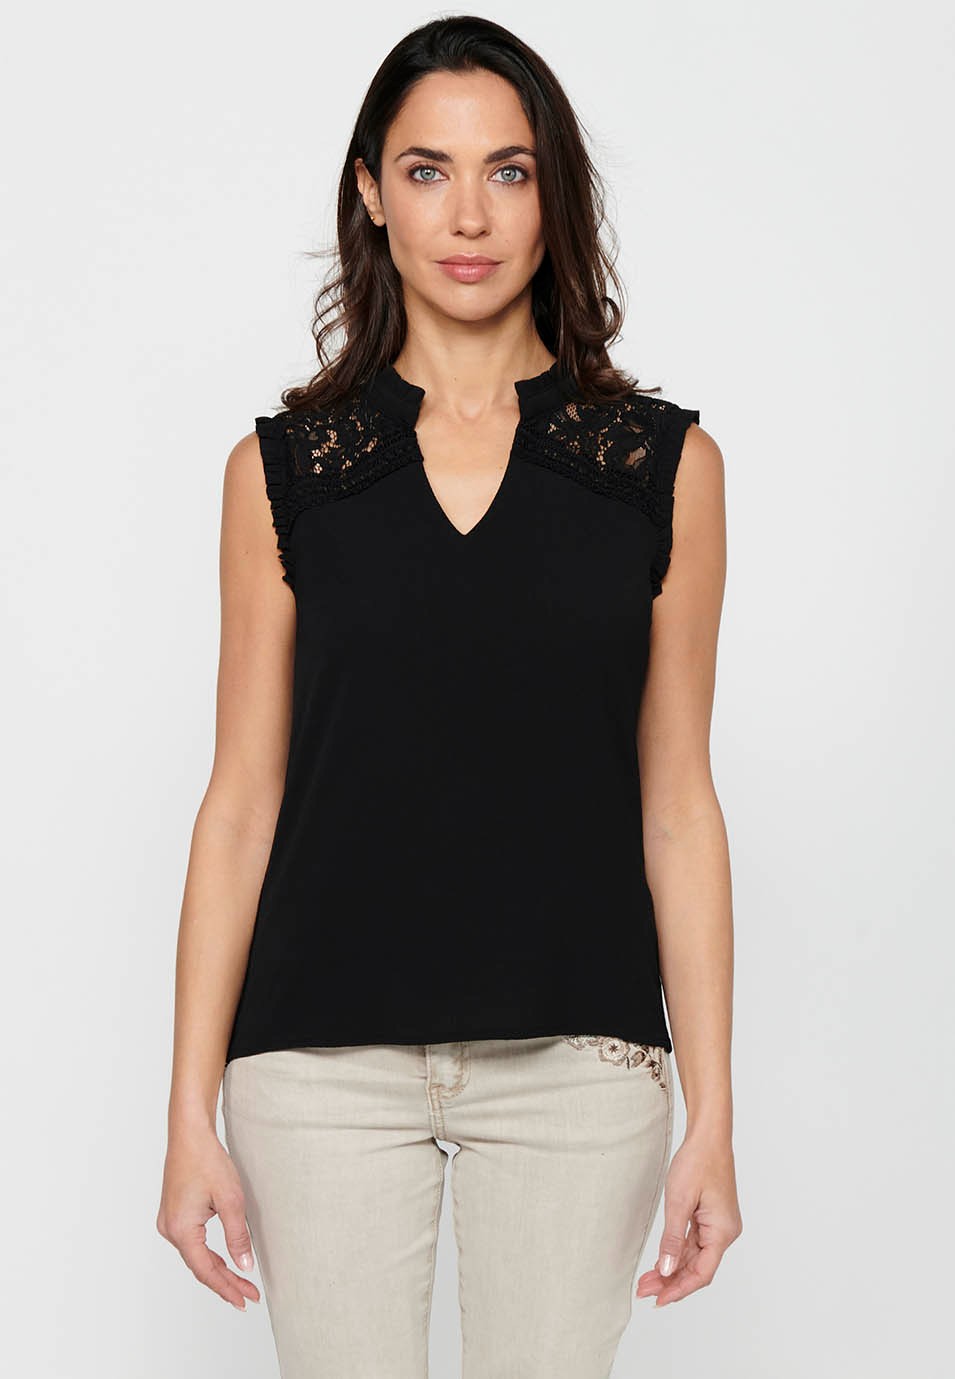 Camiseta fluida sin mangas con Cuello redondo de Color Negro para Mujer 1